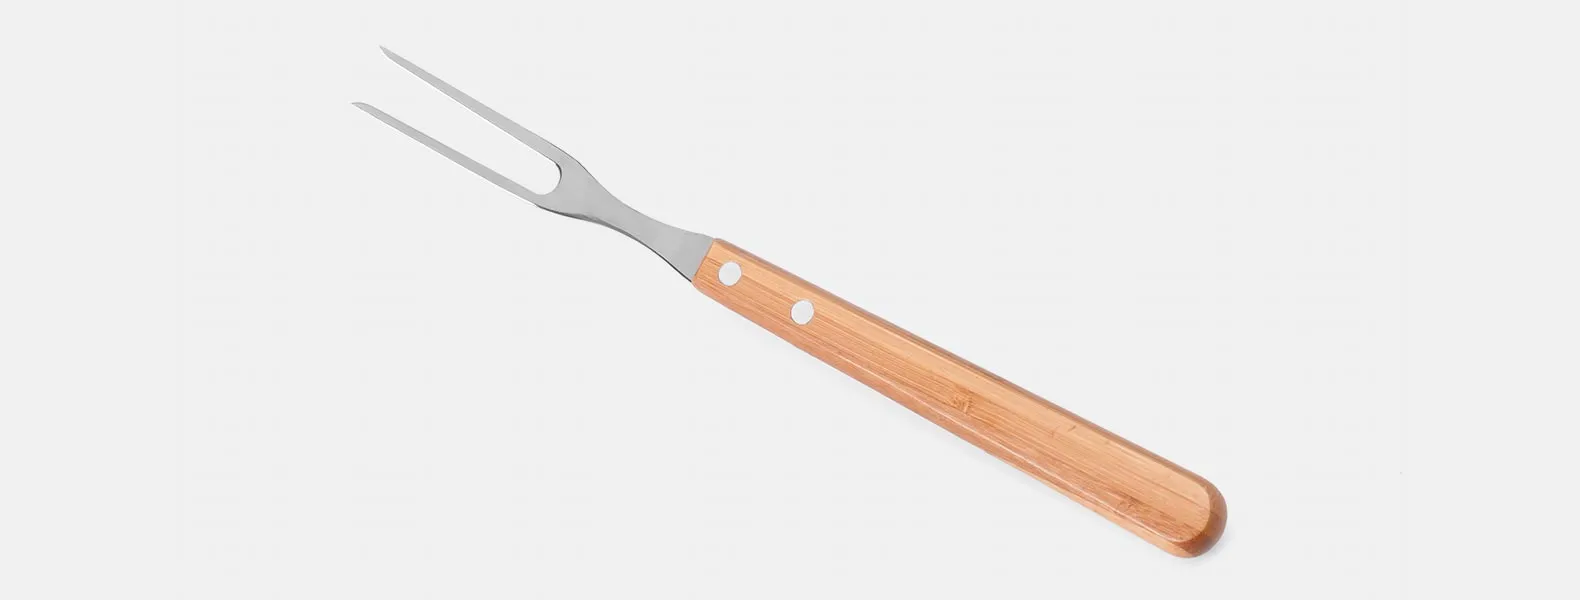 Kit com seis peças com cabos em Bambu e lâminas em aço Inox com rebites resistentes, sendo uma faca 8”, um garfo trinchante, um cutelo 6”, uma chaira 8”, uma faca Santoku 7” e uma faca 7” para pão. Estão organizados em fita elástica preta no interior de um estojo.